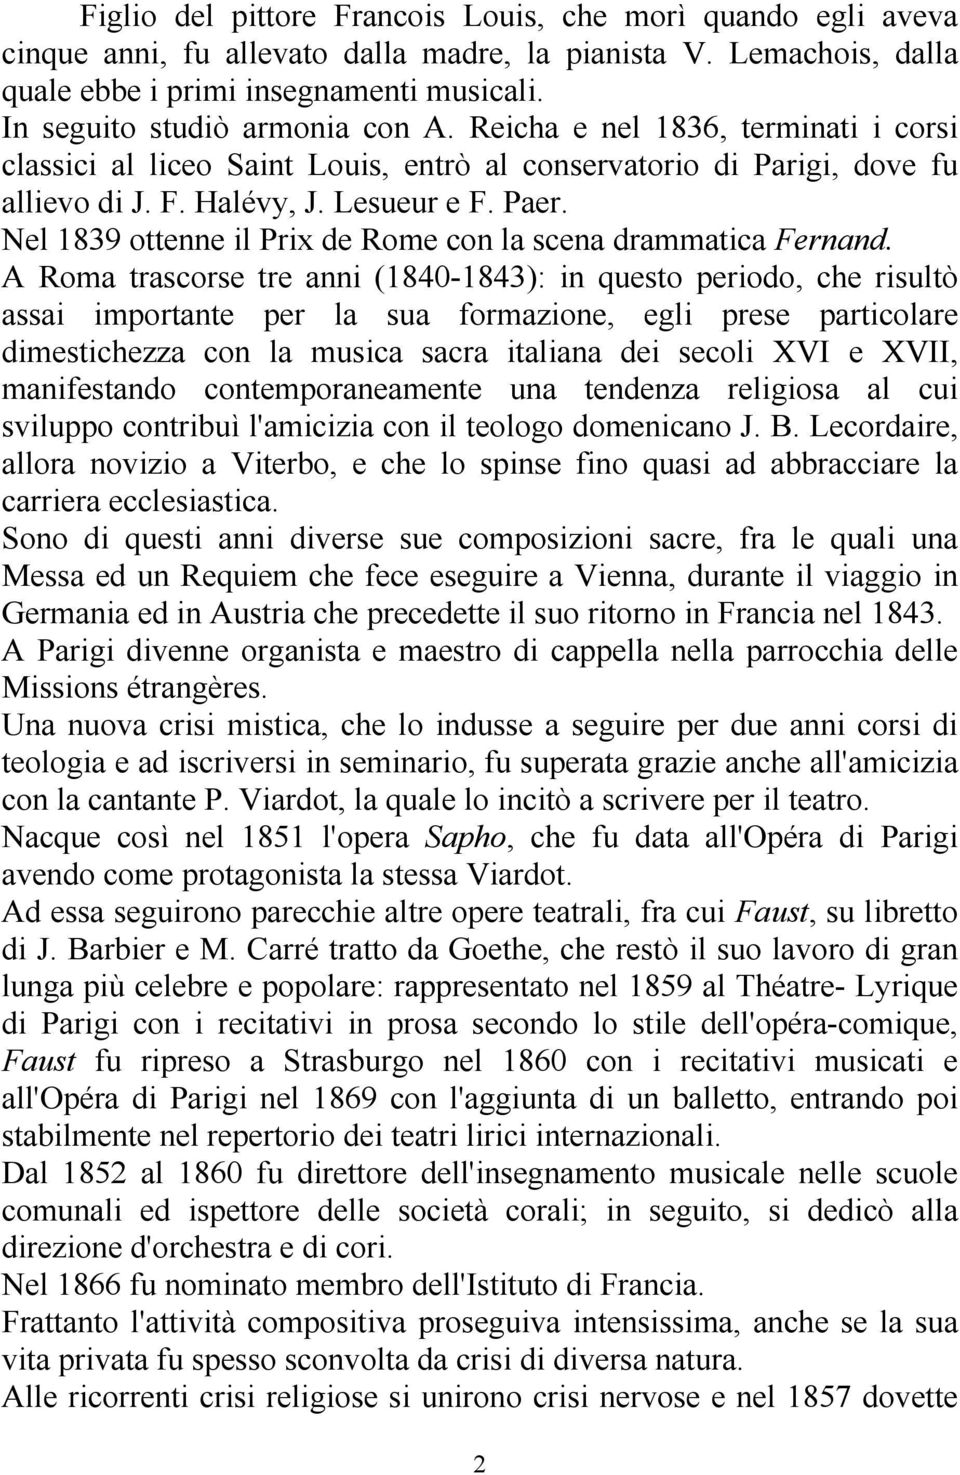 Nel 1839 ottenne il Prix de Rome con la scena drammatica Fernand.